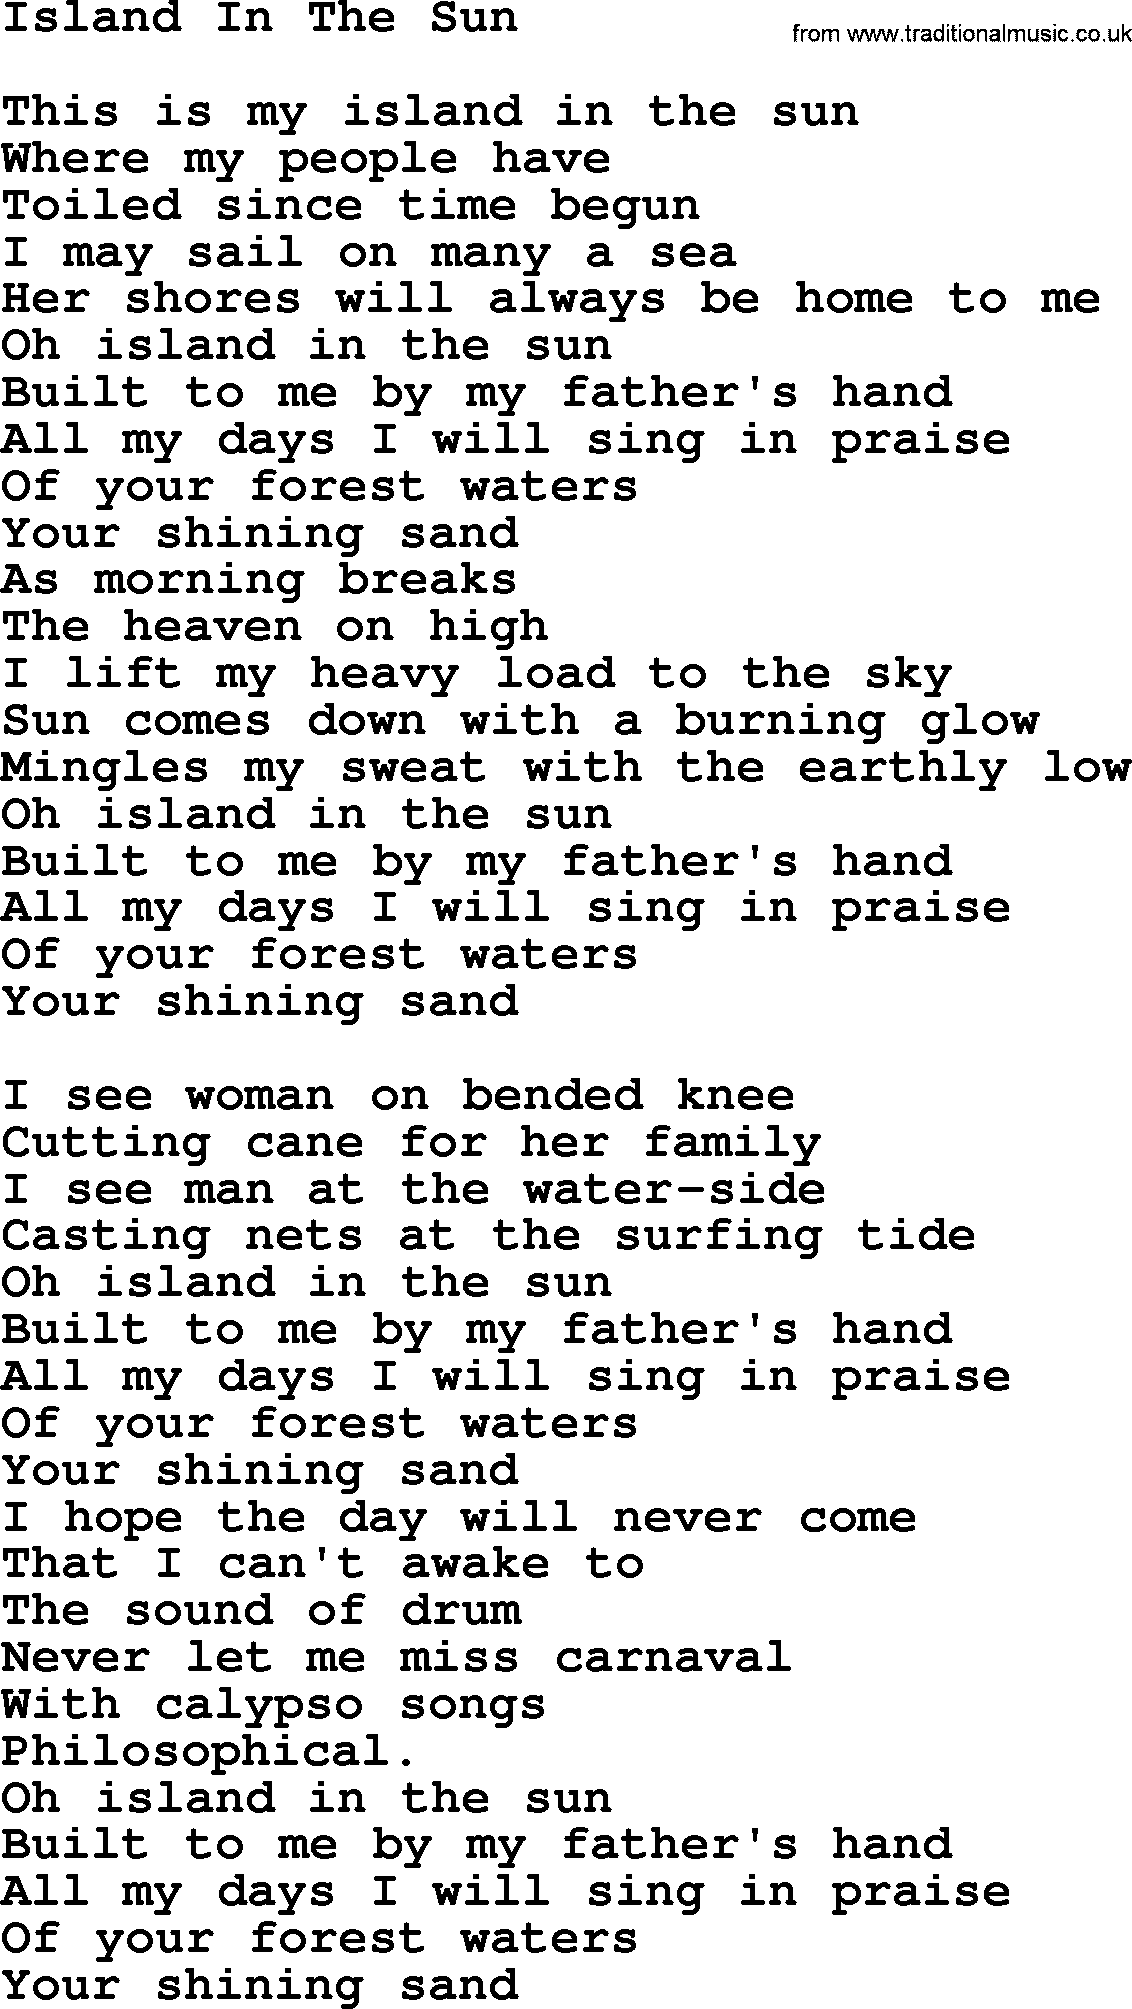 Joan Baez song Island In The Sun, lyrics